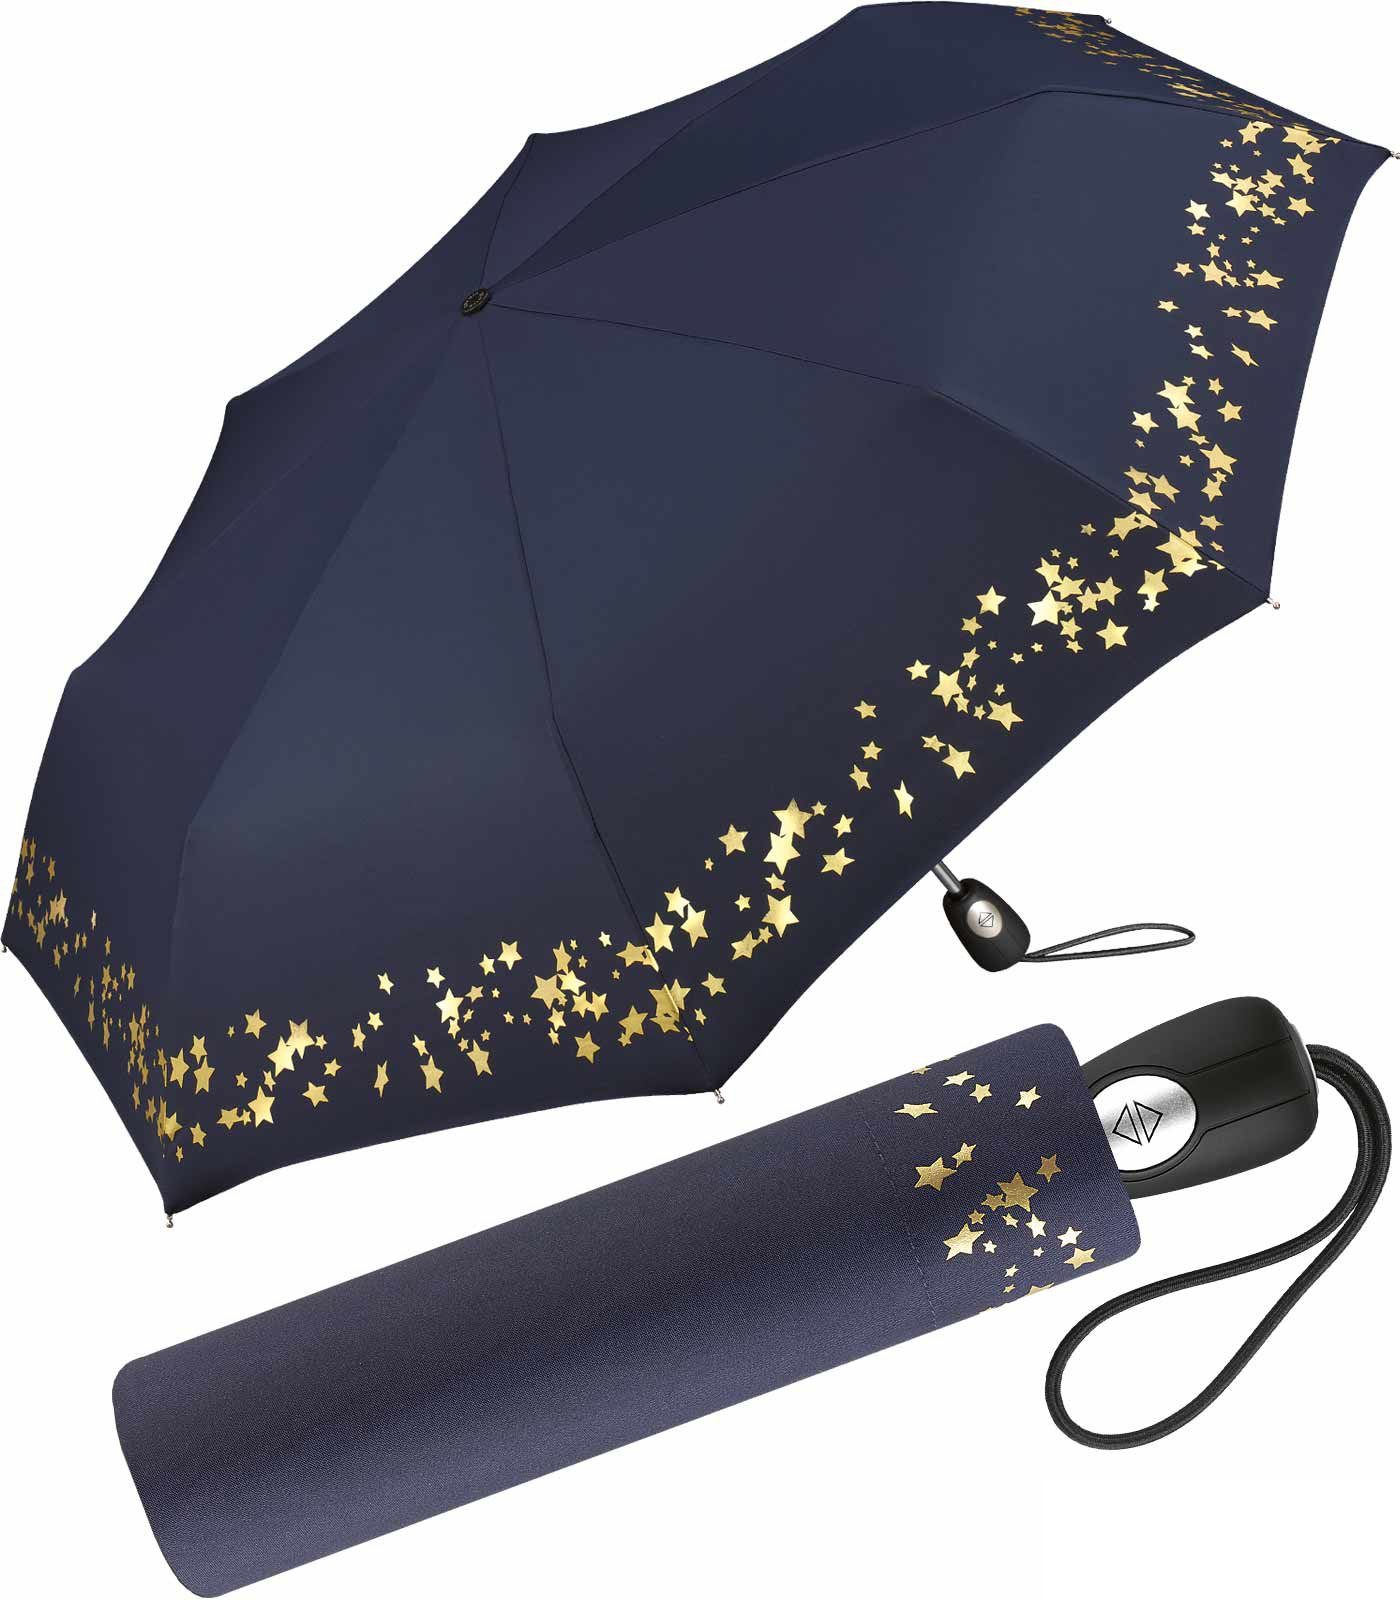 Pierre Cardin Taschenregenschirm schöner Damen-Regenschirm mit Auf-Zu-Automatik, traumhafte Sterne in verspieltem Design blau-gold